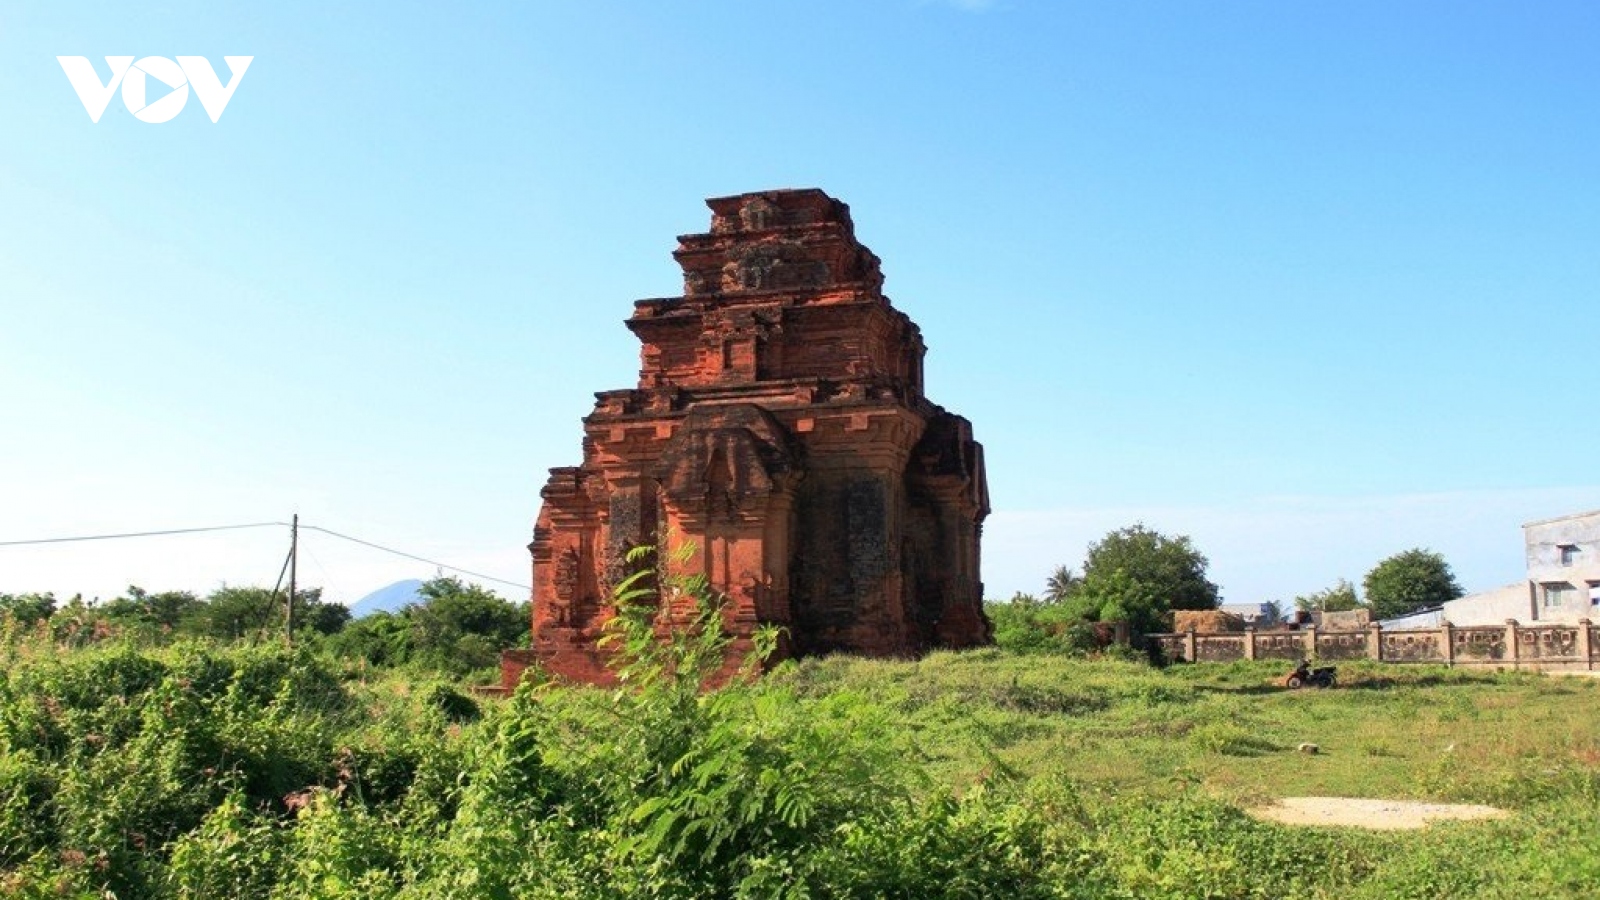 Di tích tháp cổ ngàn năm ở Ninh Thuận đang bị lãng quên